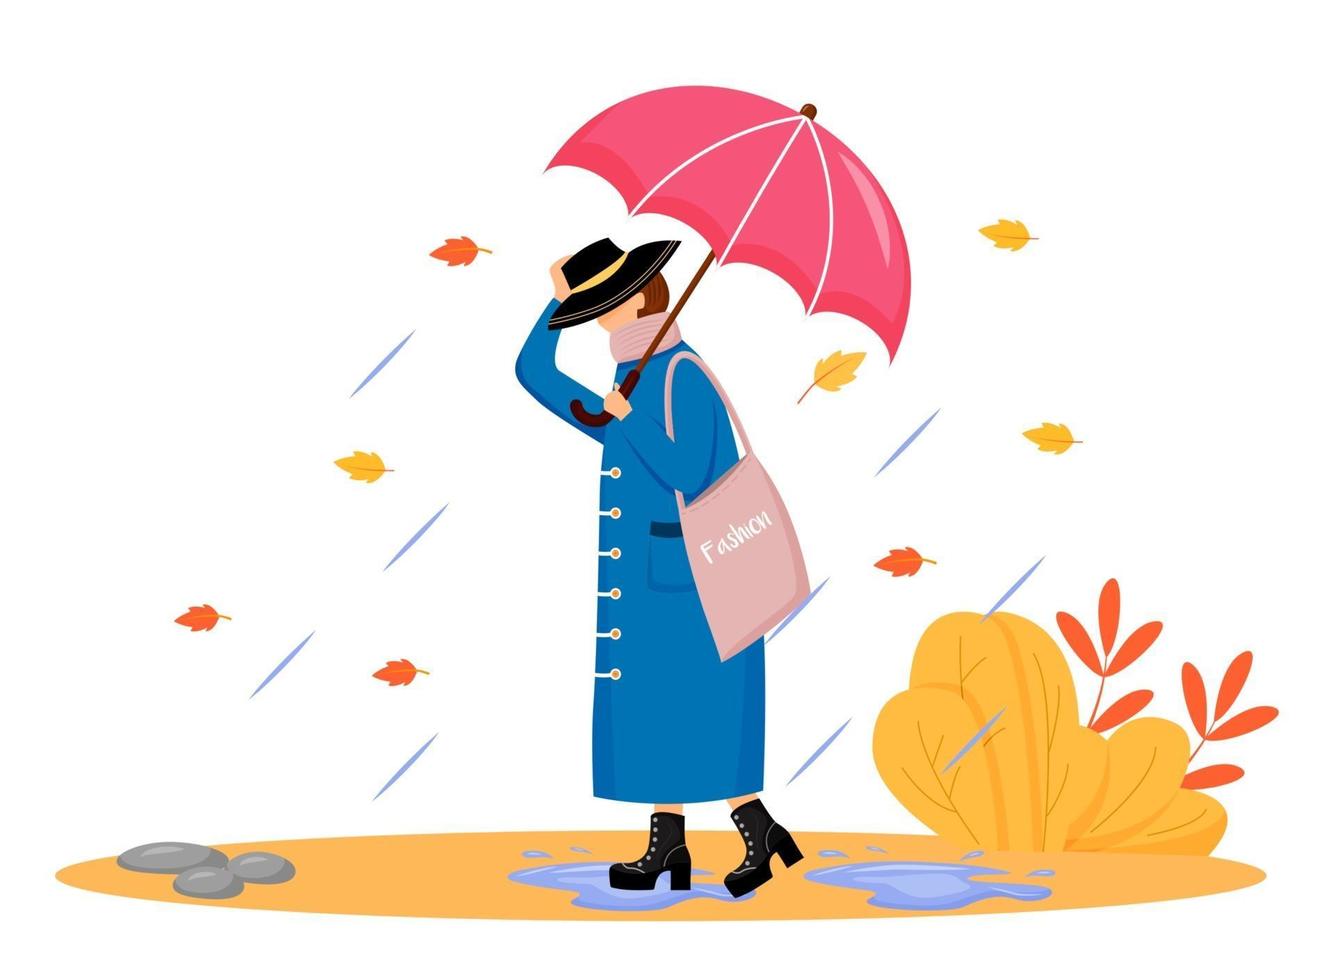 vrouw in regenjas egale kleur vector gezichtsloos karakter